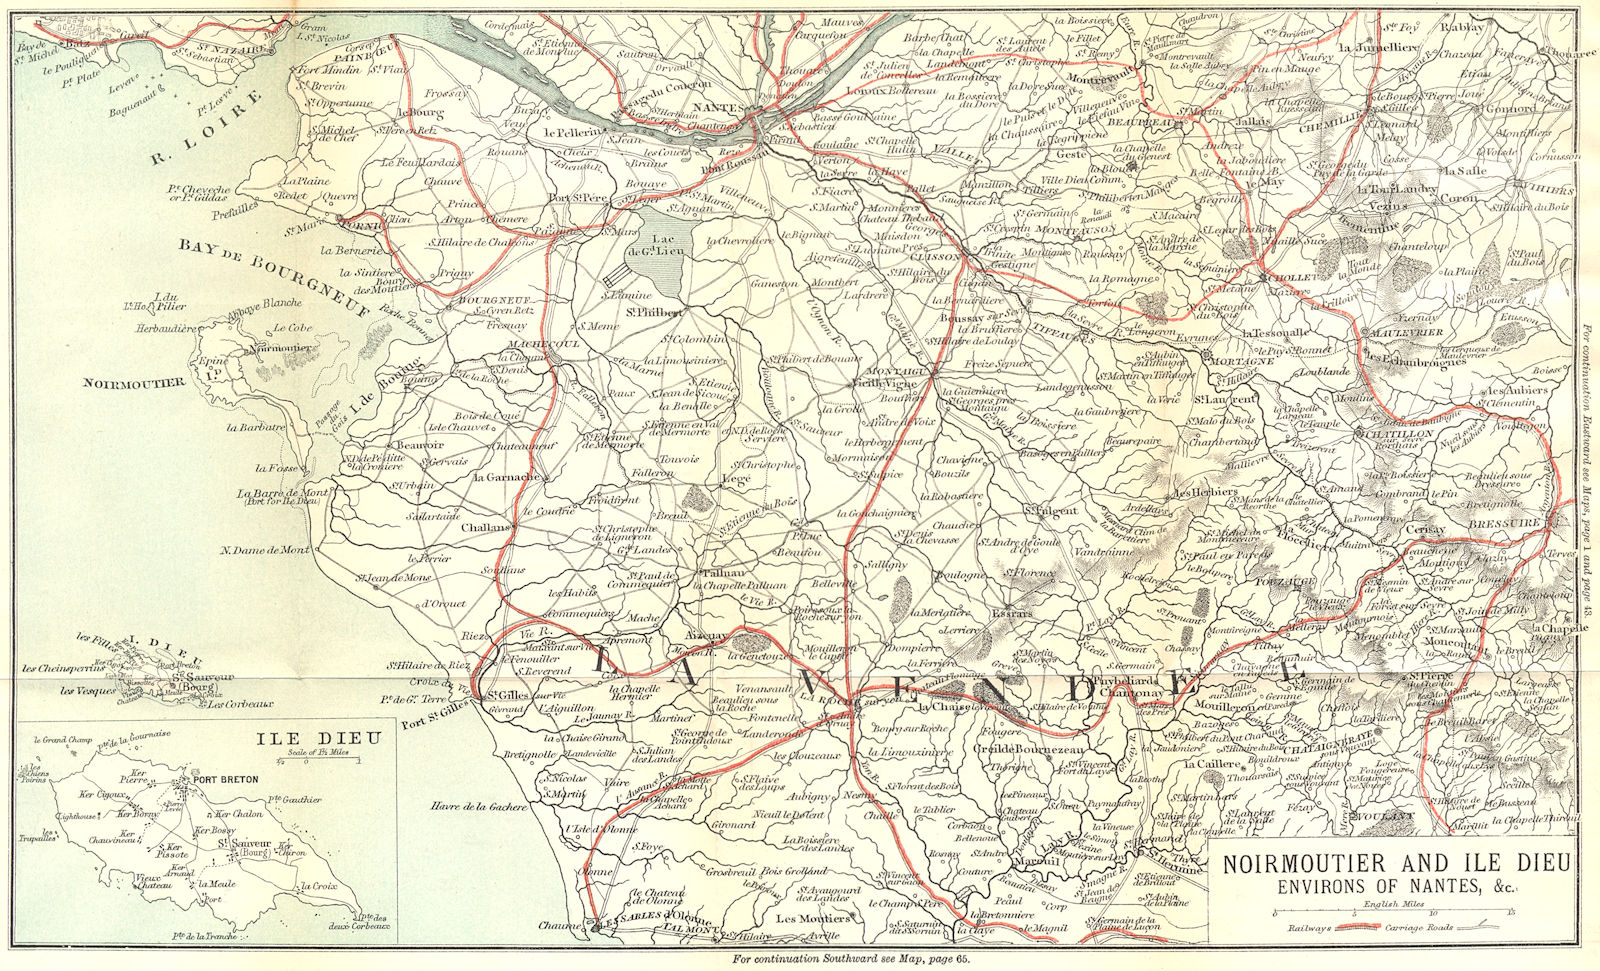 LOIRE-ATLANTIQUE. Noirmoutier & Ile Dieu area of Nantes 1889 old map